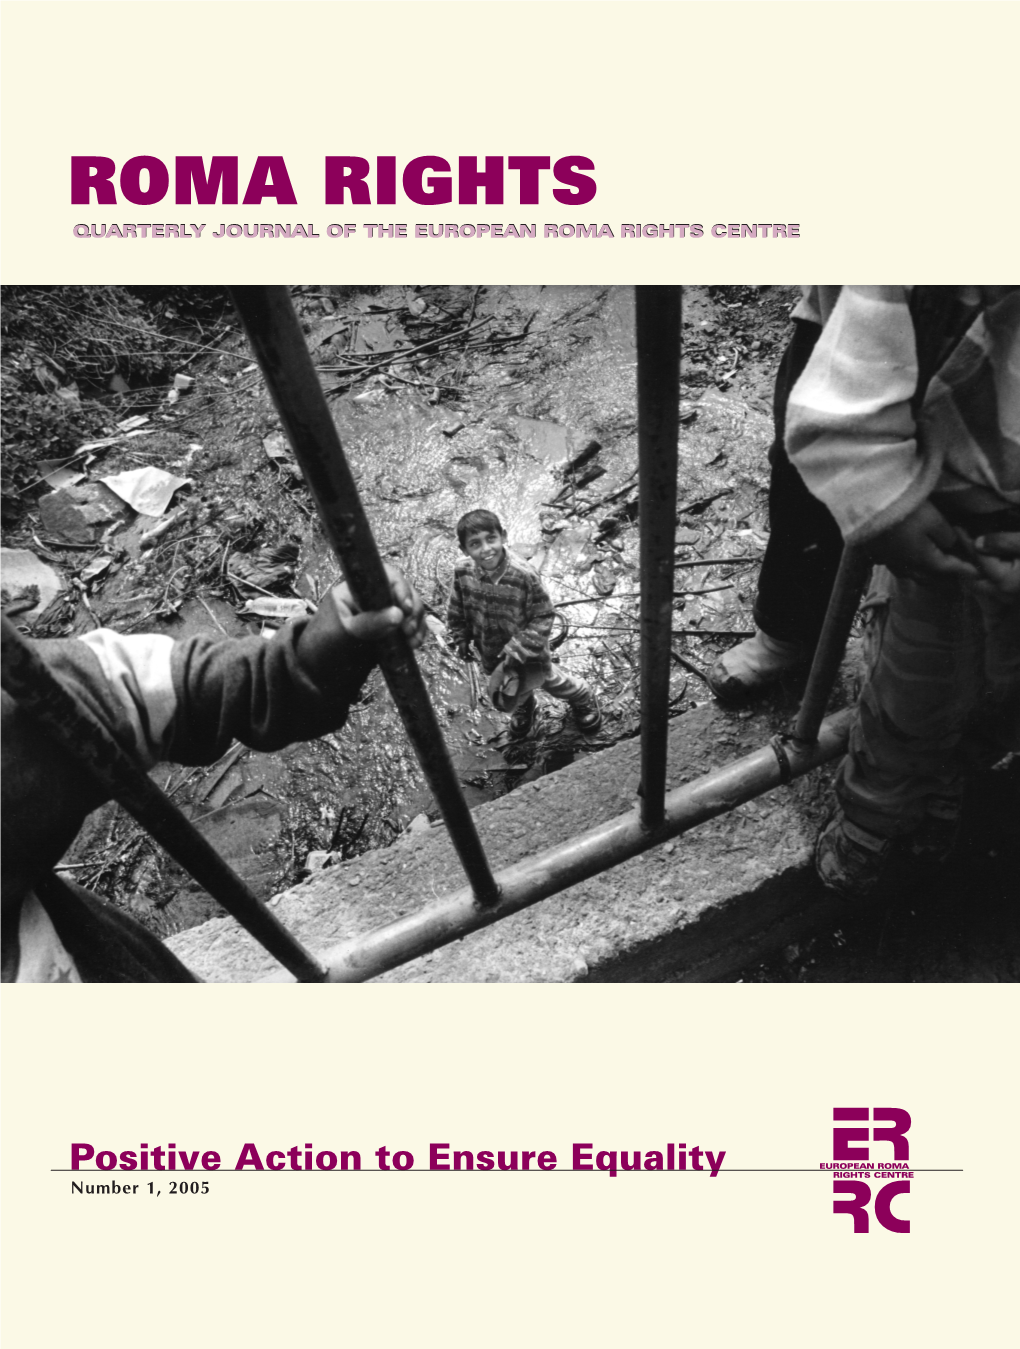 Roma Rights Centre